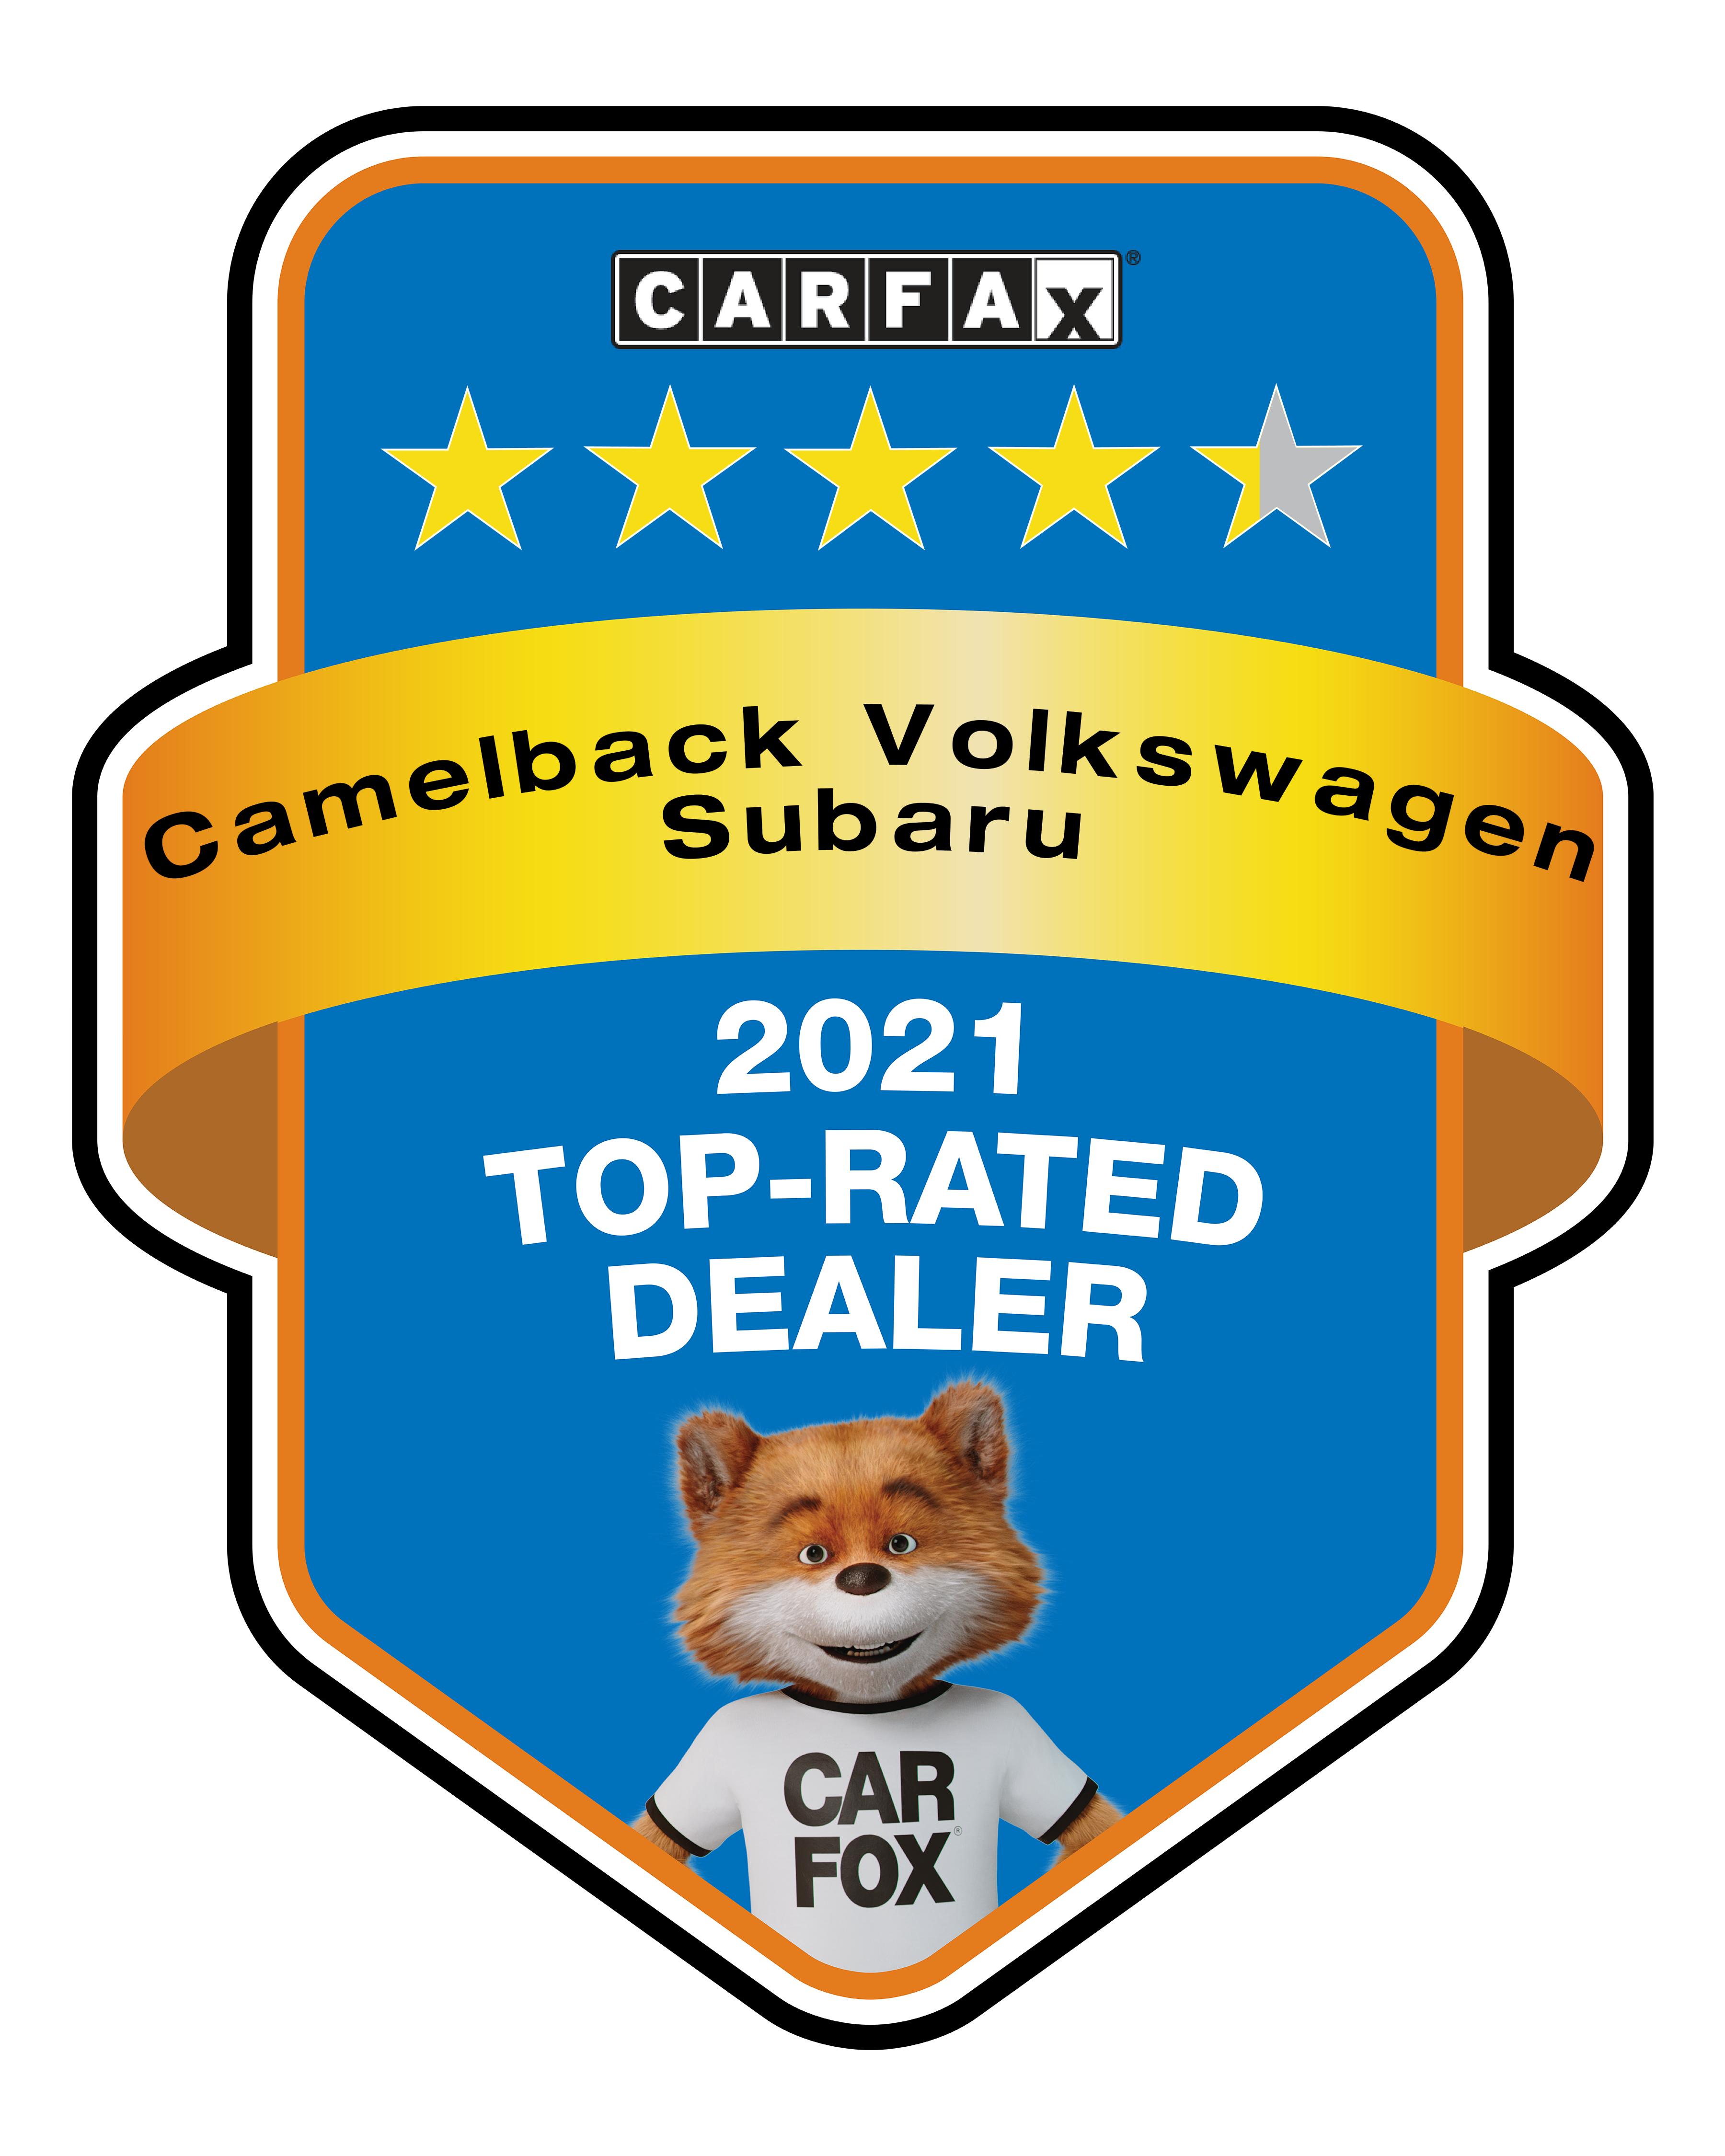 CarFax Top Rated Subaru Dealership